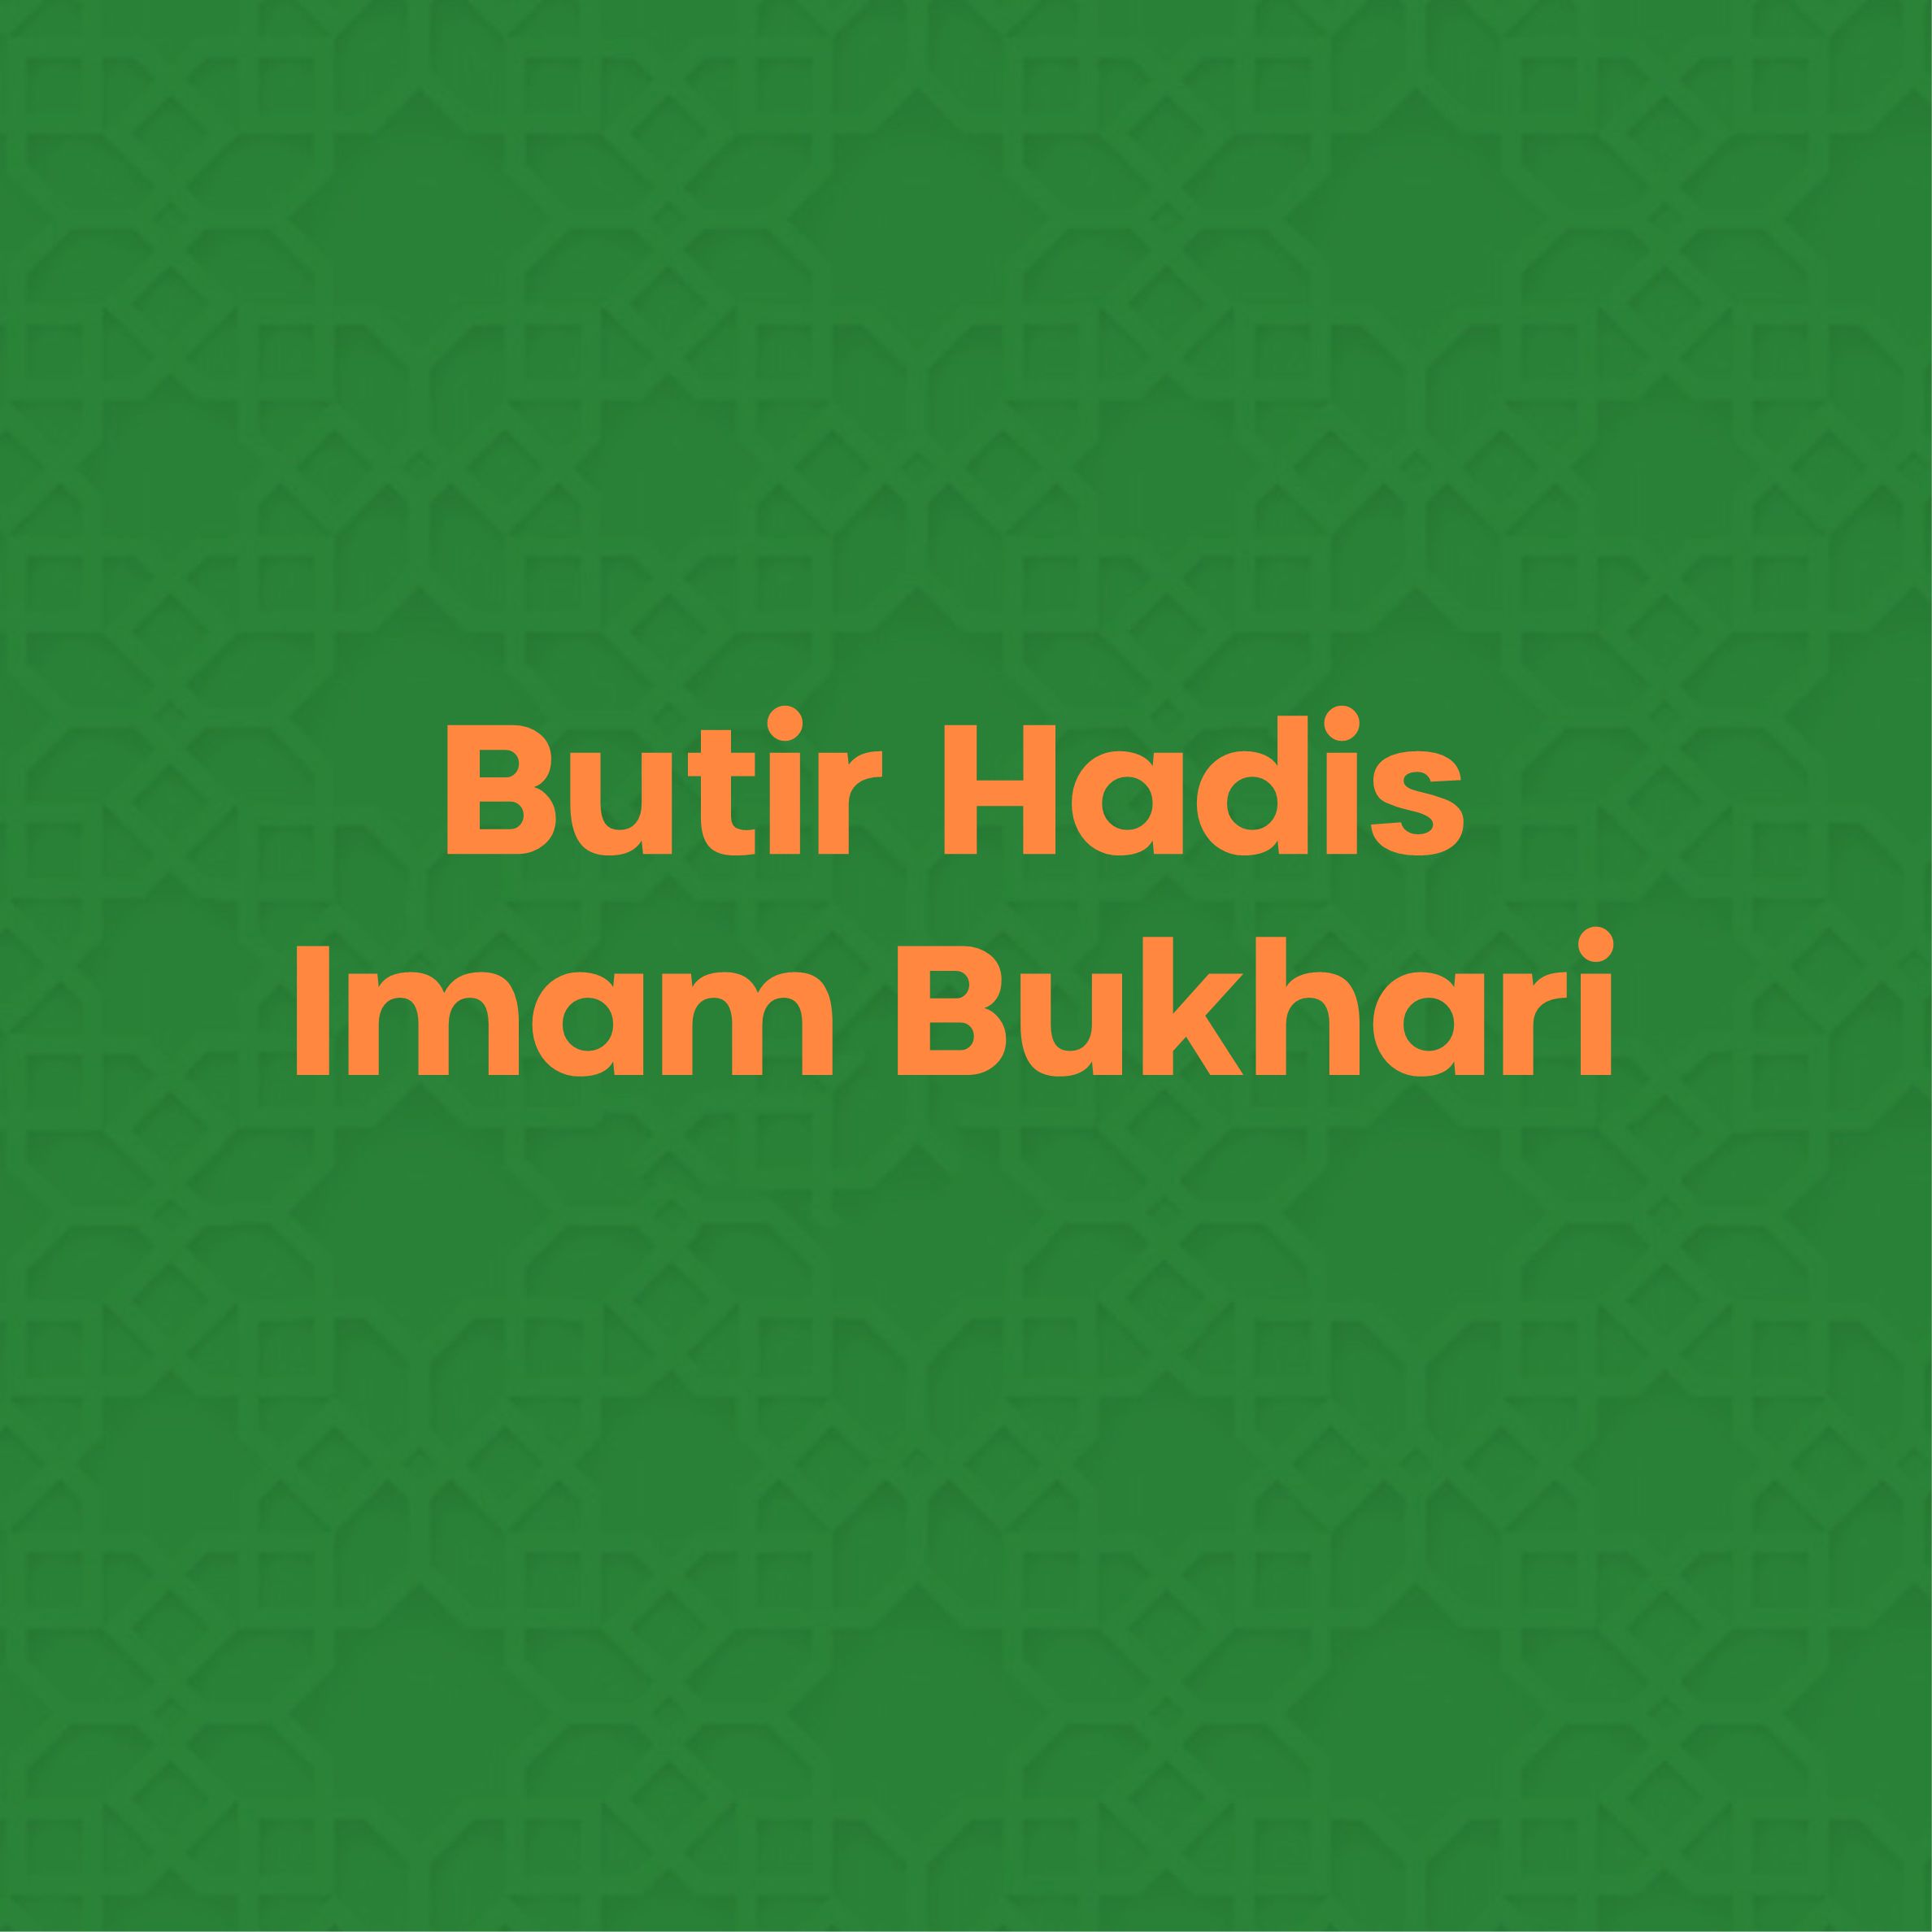 Hadis Imam Bukhari No. 348 : Apabila pakaian yang dikenakan untuk shalat sempit